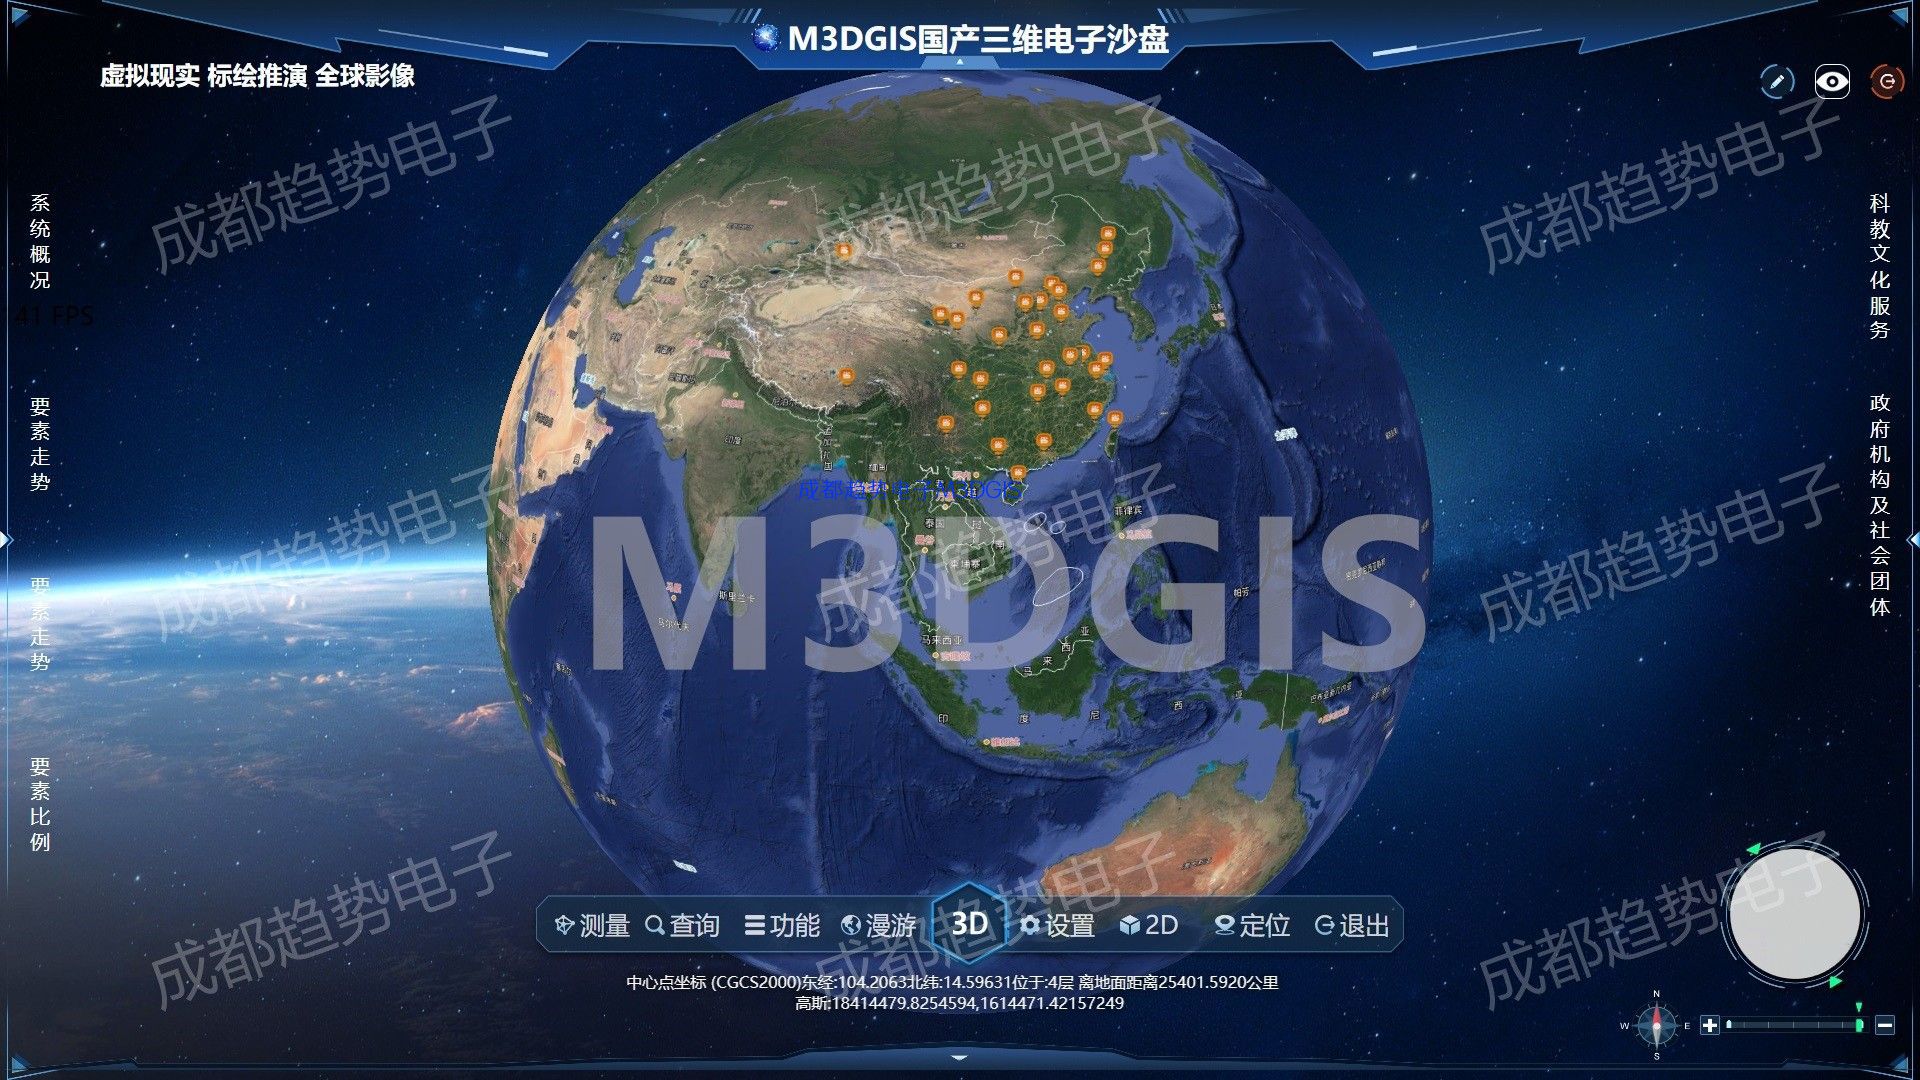 M3DGIS国产三维电子沙盘核心功能视频